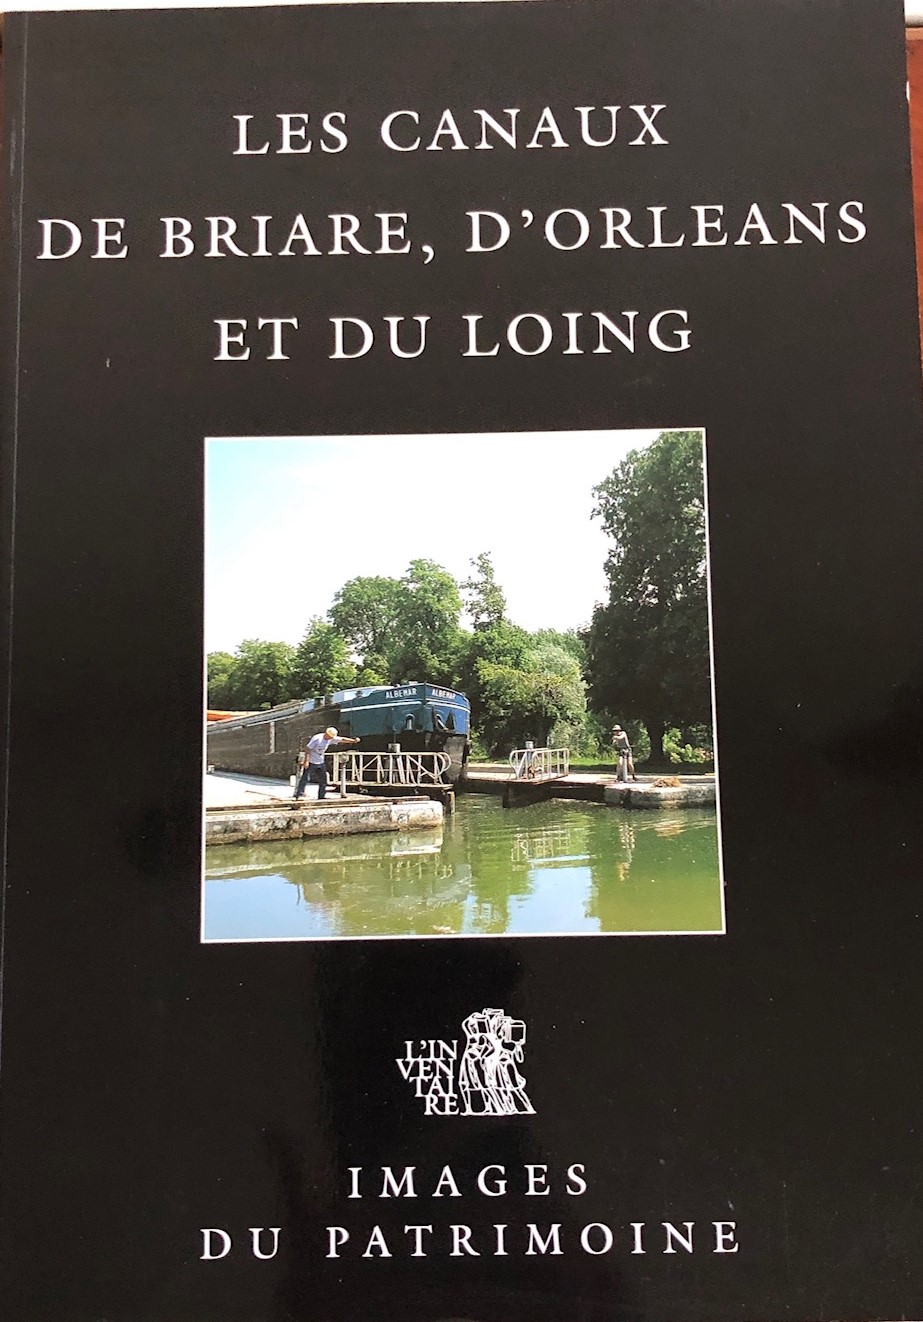 MAURET- Les canaux de Briare d'Orléans IMG_1325